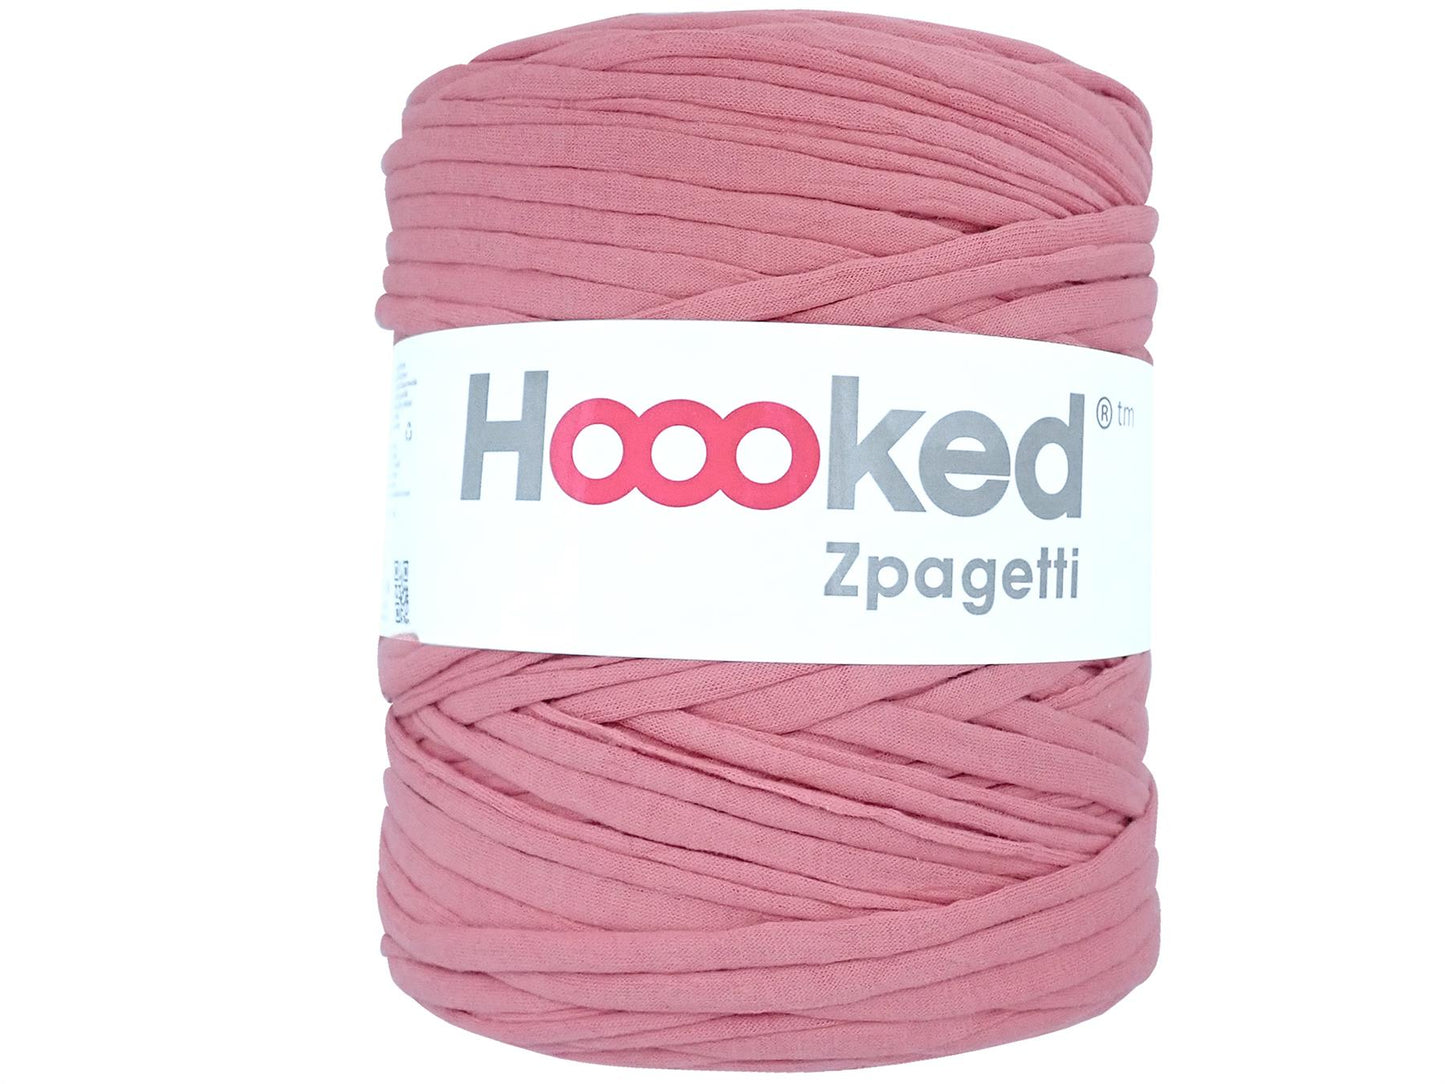 Hoooked Zpagetti Salmon Pink Cotton T-Shirt Yarn - 120M 700g